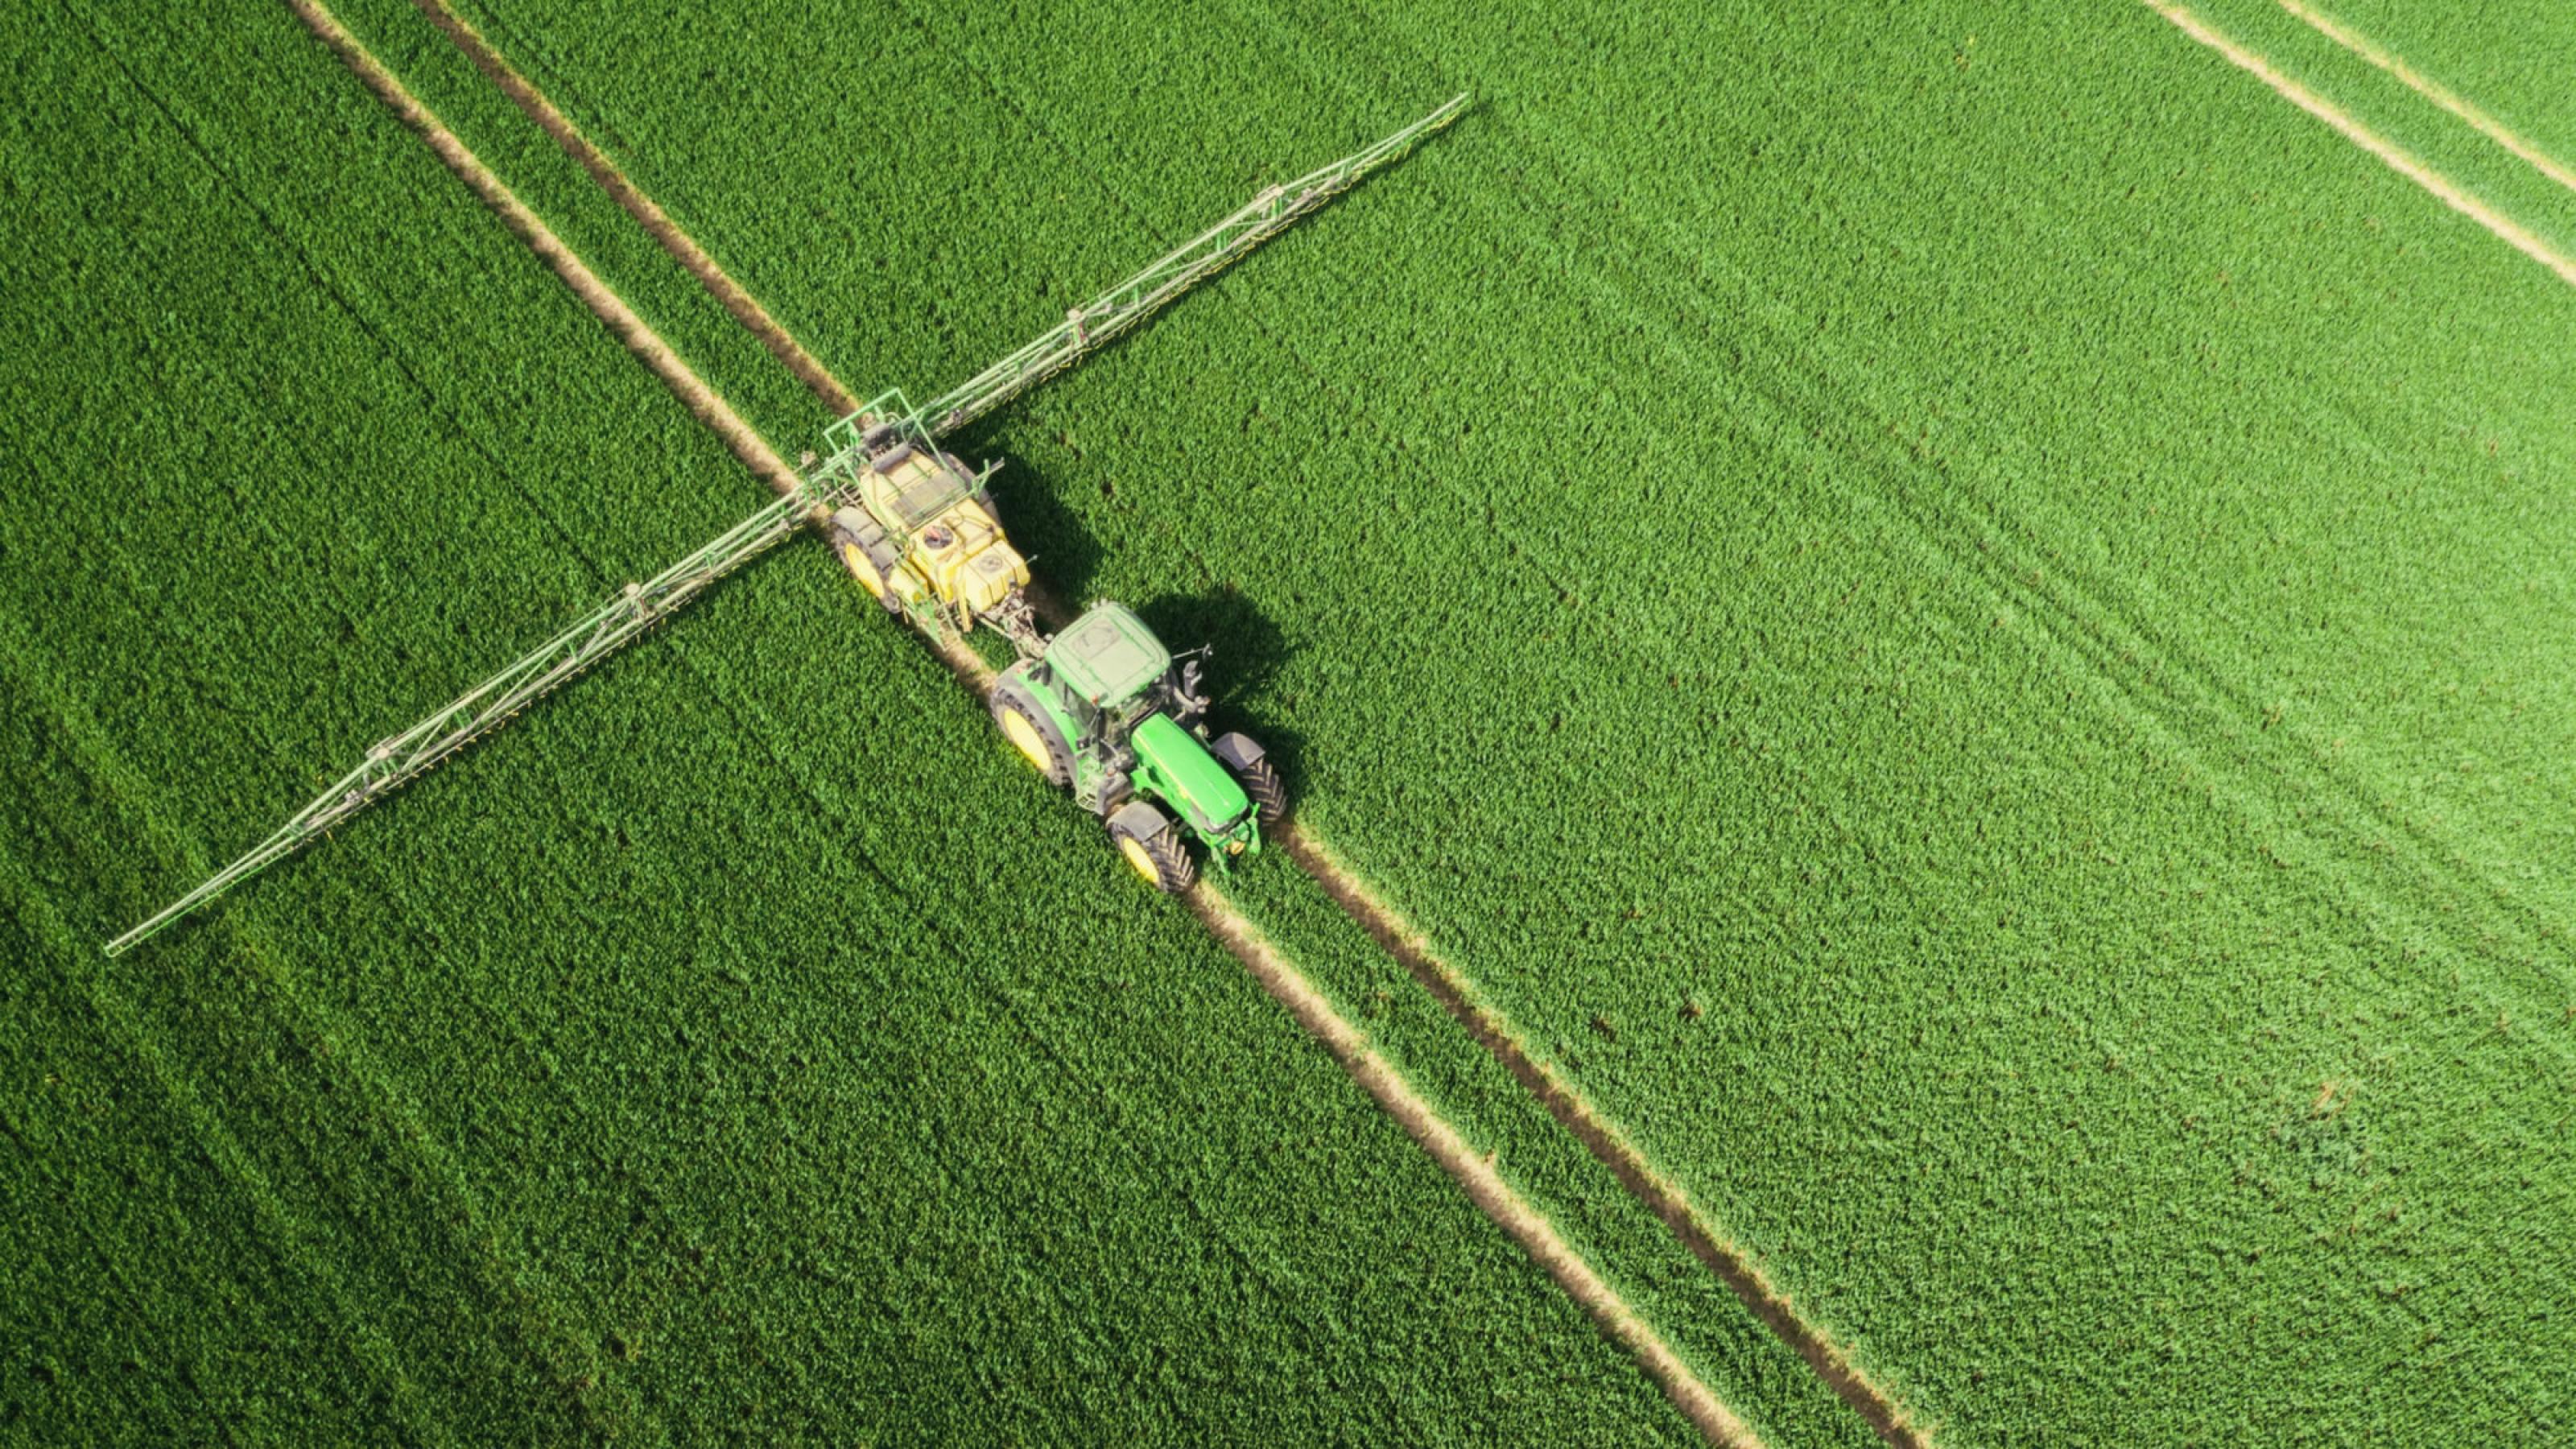 Luftbildaufnahme eines Traktors, der auf einem grünen Feld Dünger ausbringt. Copyright: © 2021 Netflix, Inc.